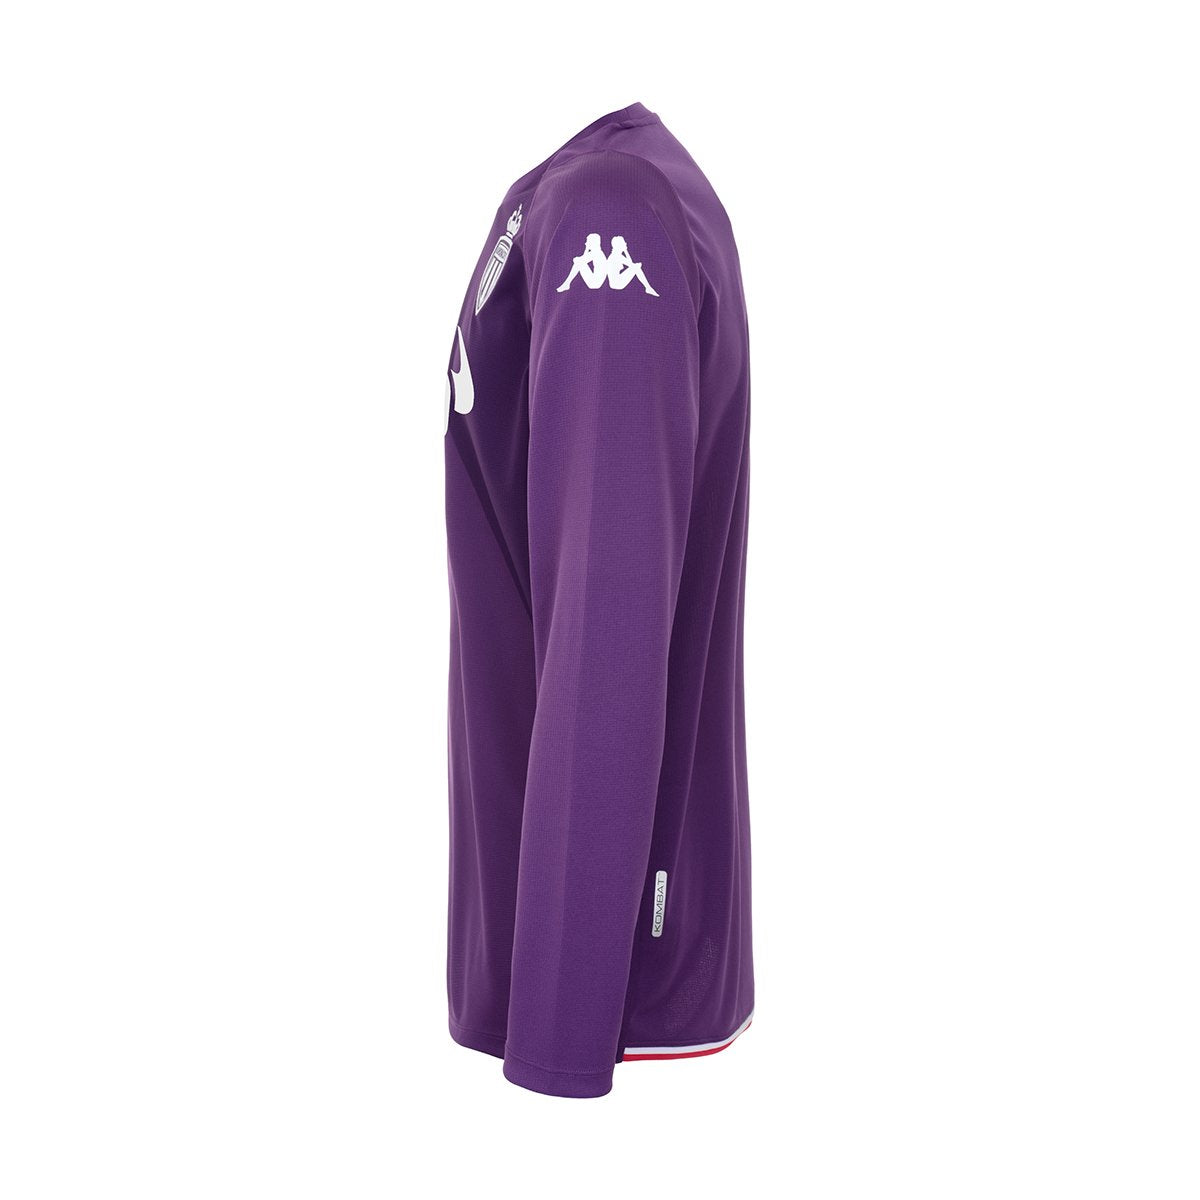 Camiseta Kombat Goalkeeper AS Monaco niño Púrpura - Imagen 3